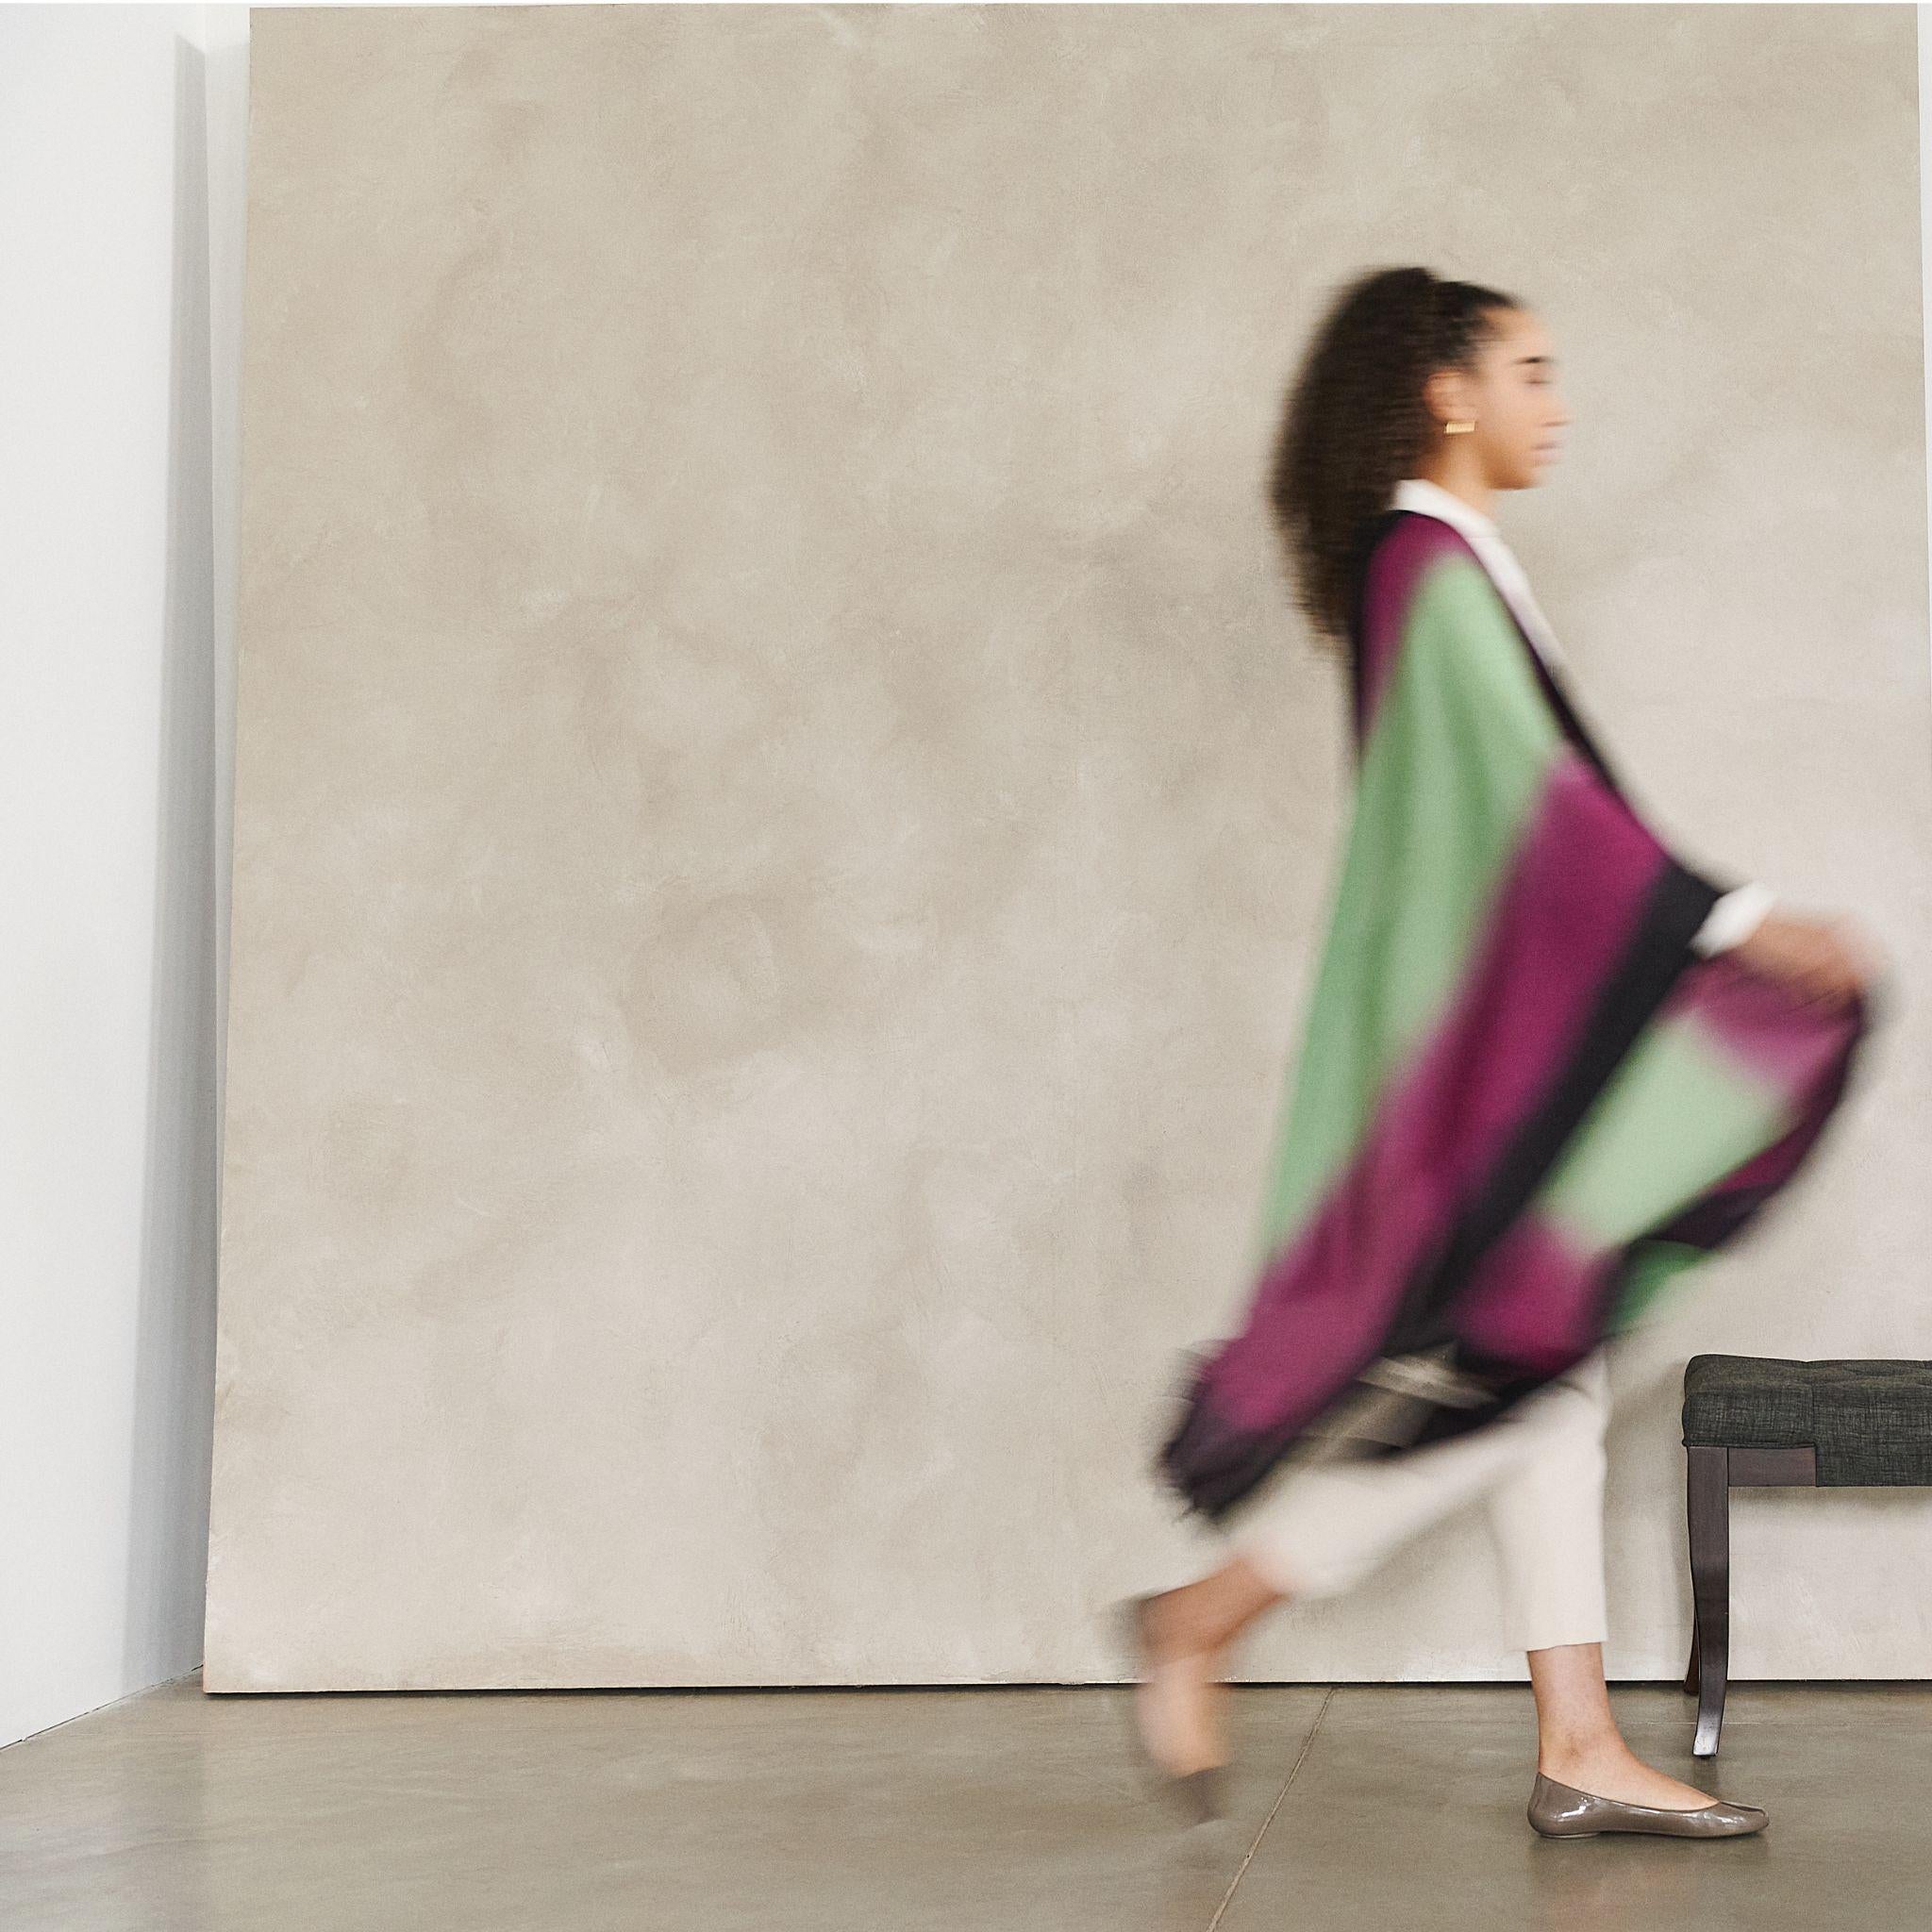 Das Iris Courtyard Tuch verbindet Schlichtheit und Eleganz mit künstlerischem Luxus. Es wurde von Meisterhandwerkern sorgfältig gefärbt, um diesen wunderschönen, einzigartigen Effekt der Farbmischung zu erzielen. Die feine Mikro-Rautenstruktur von